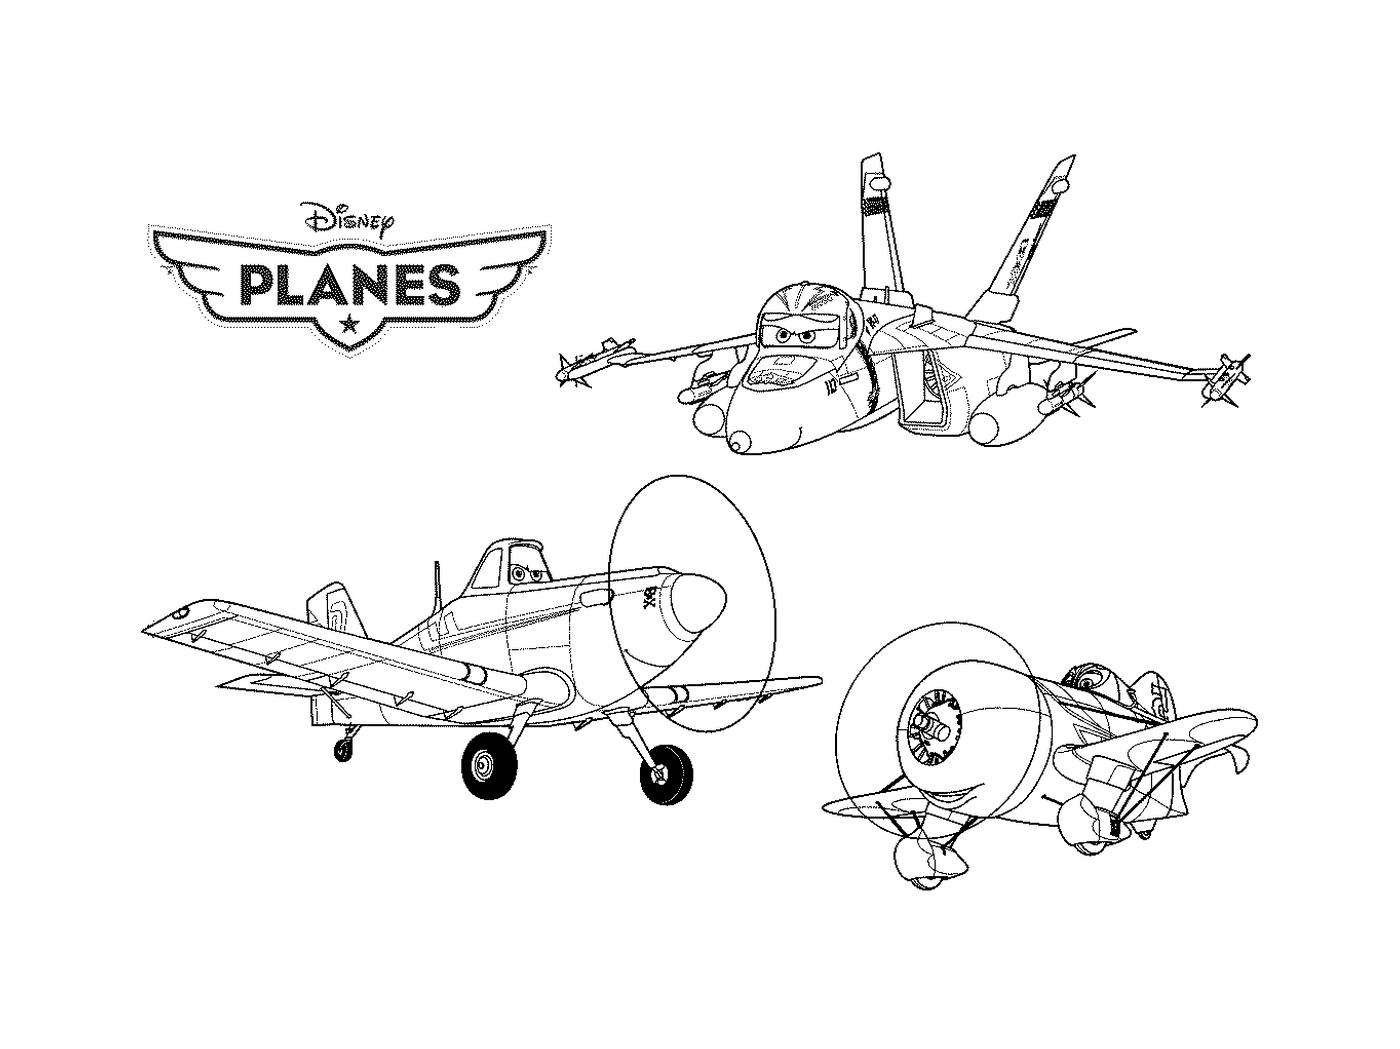  Um conjunto de três desenhos de um avião 